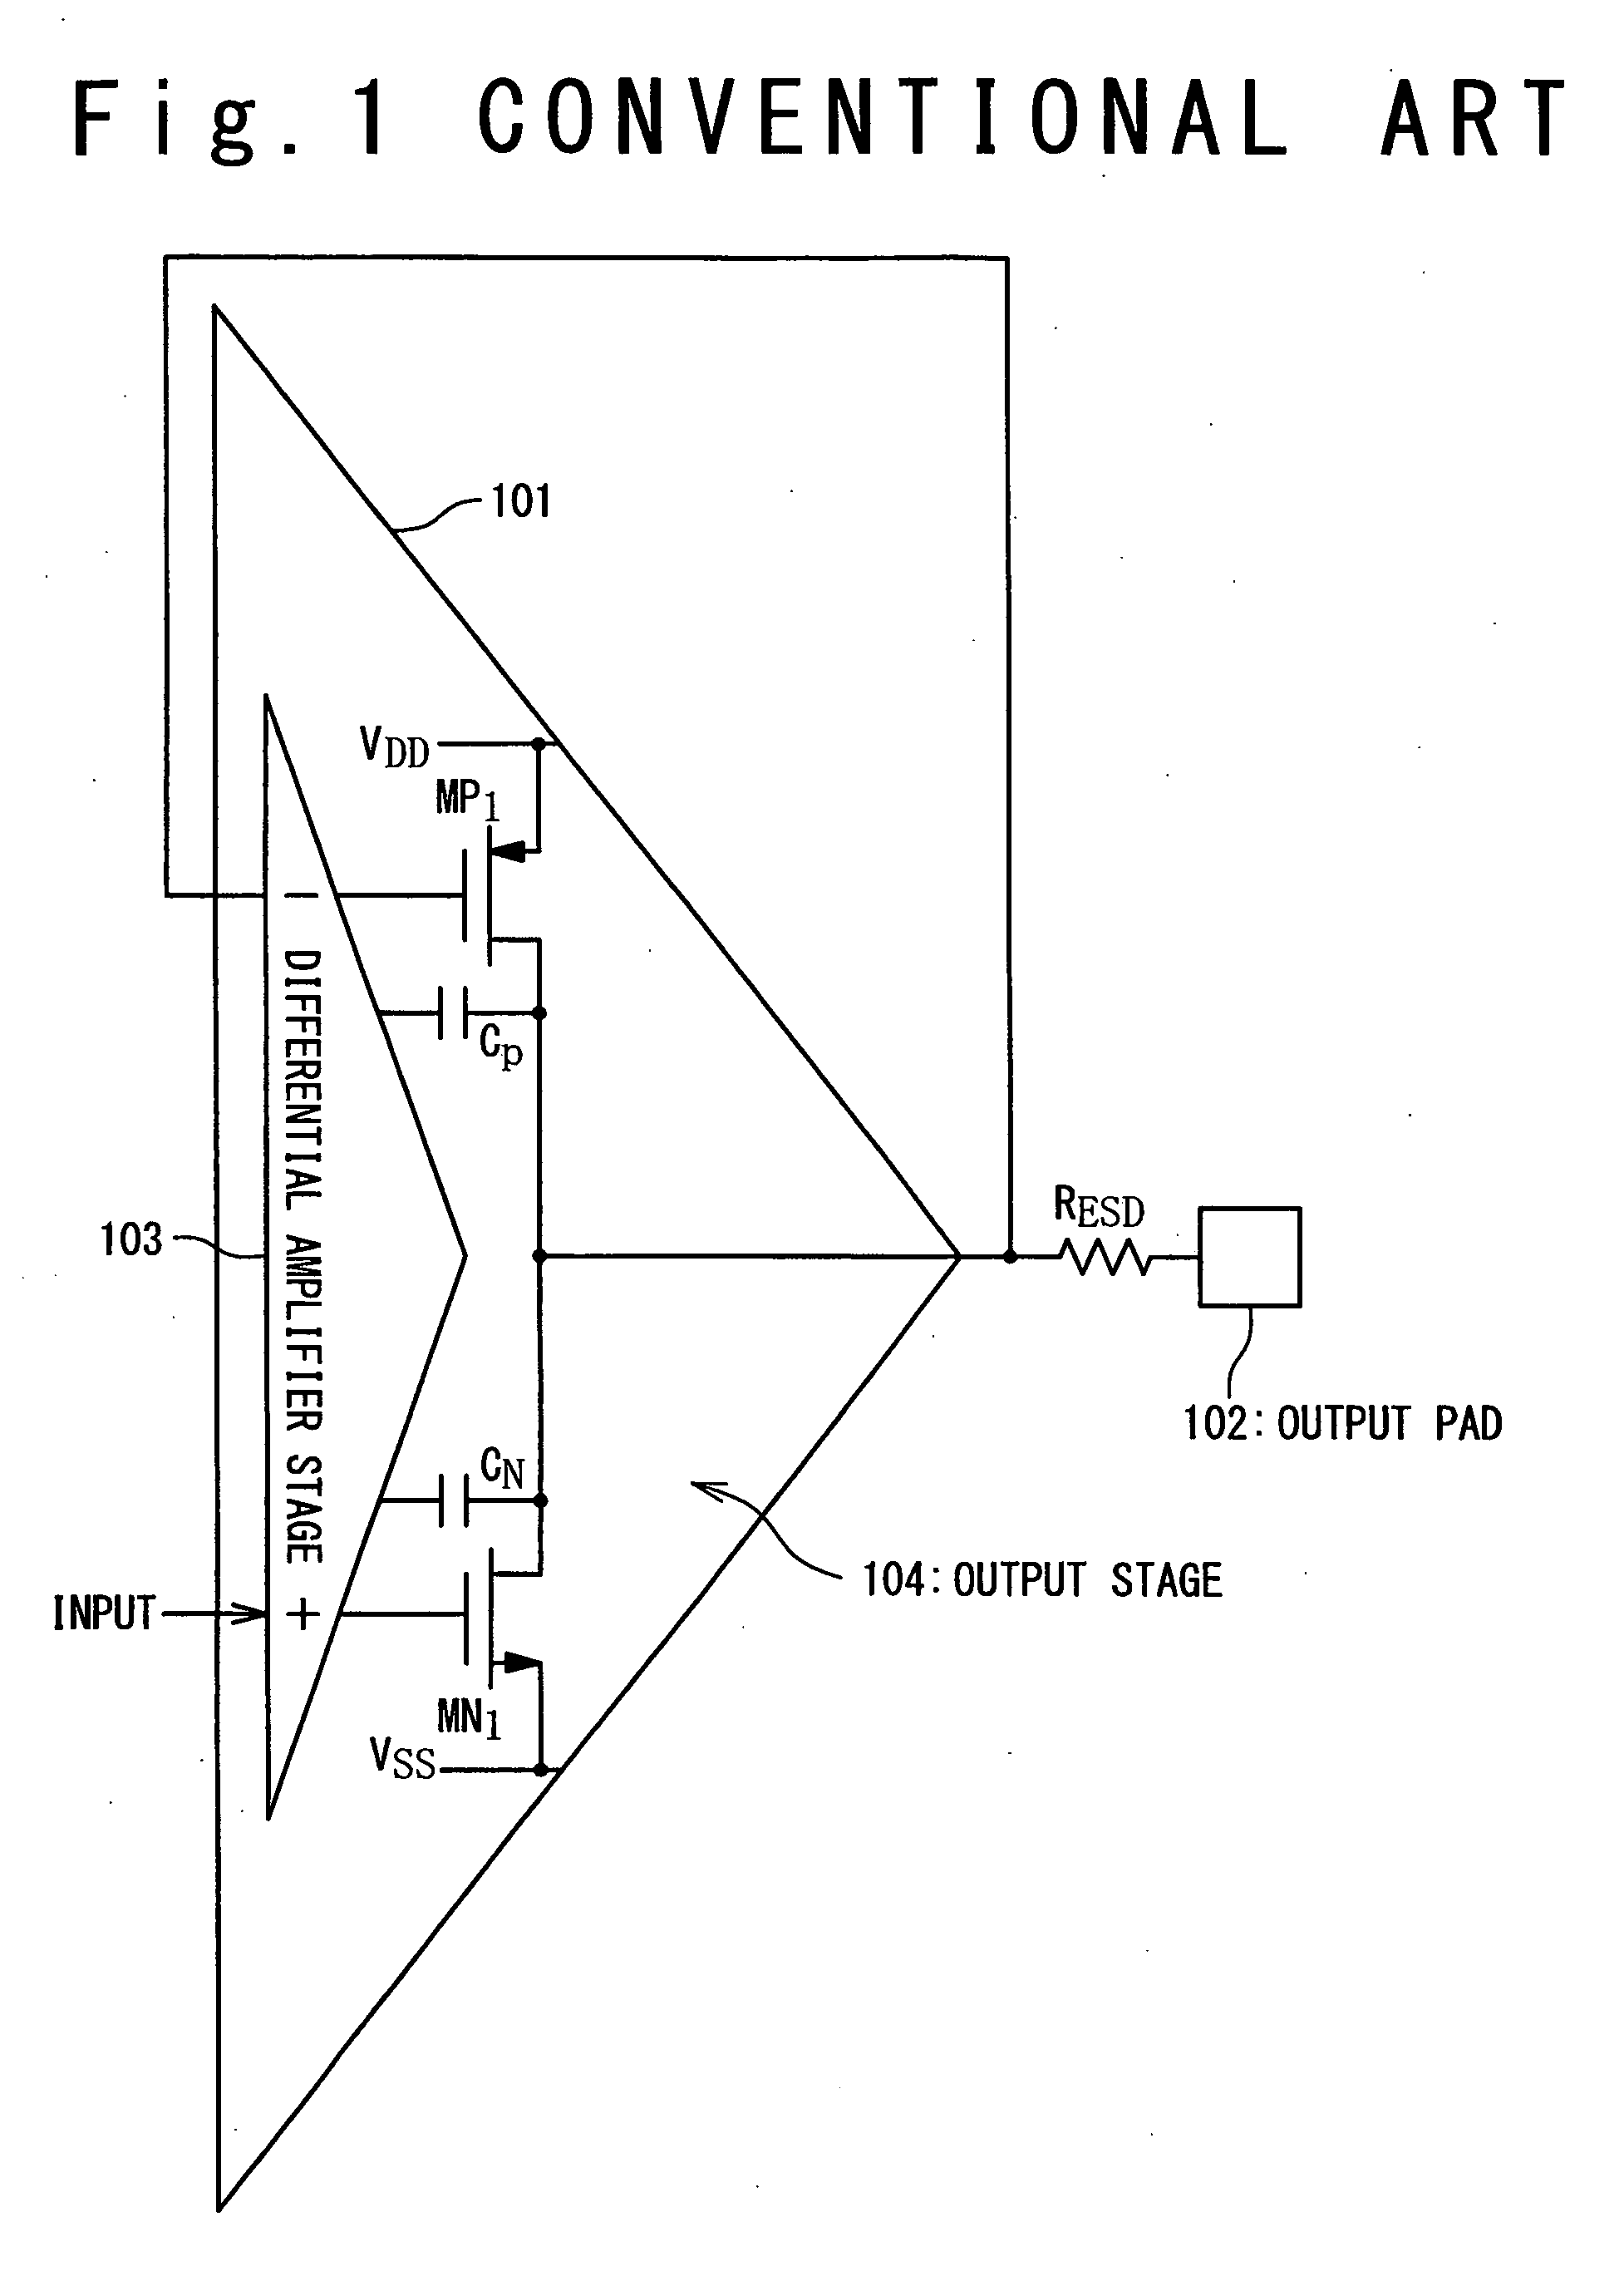 Output circuit using analog amplifier